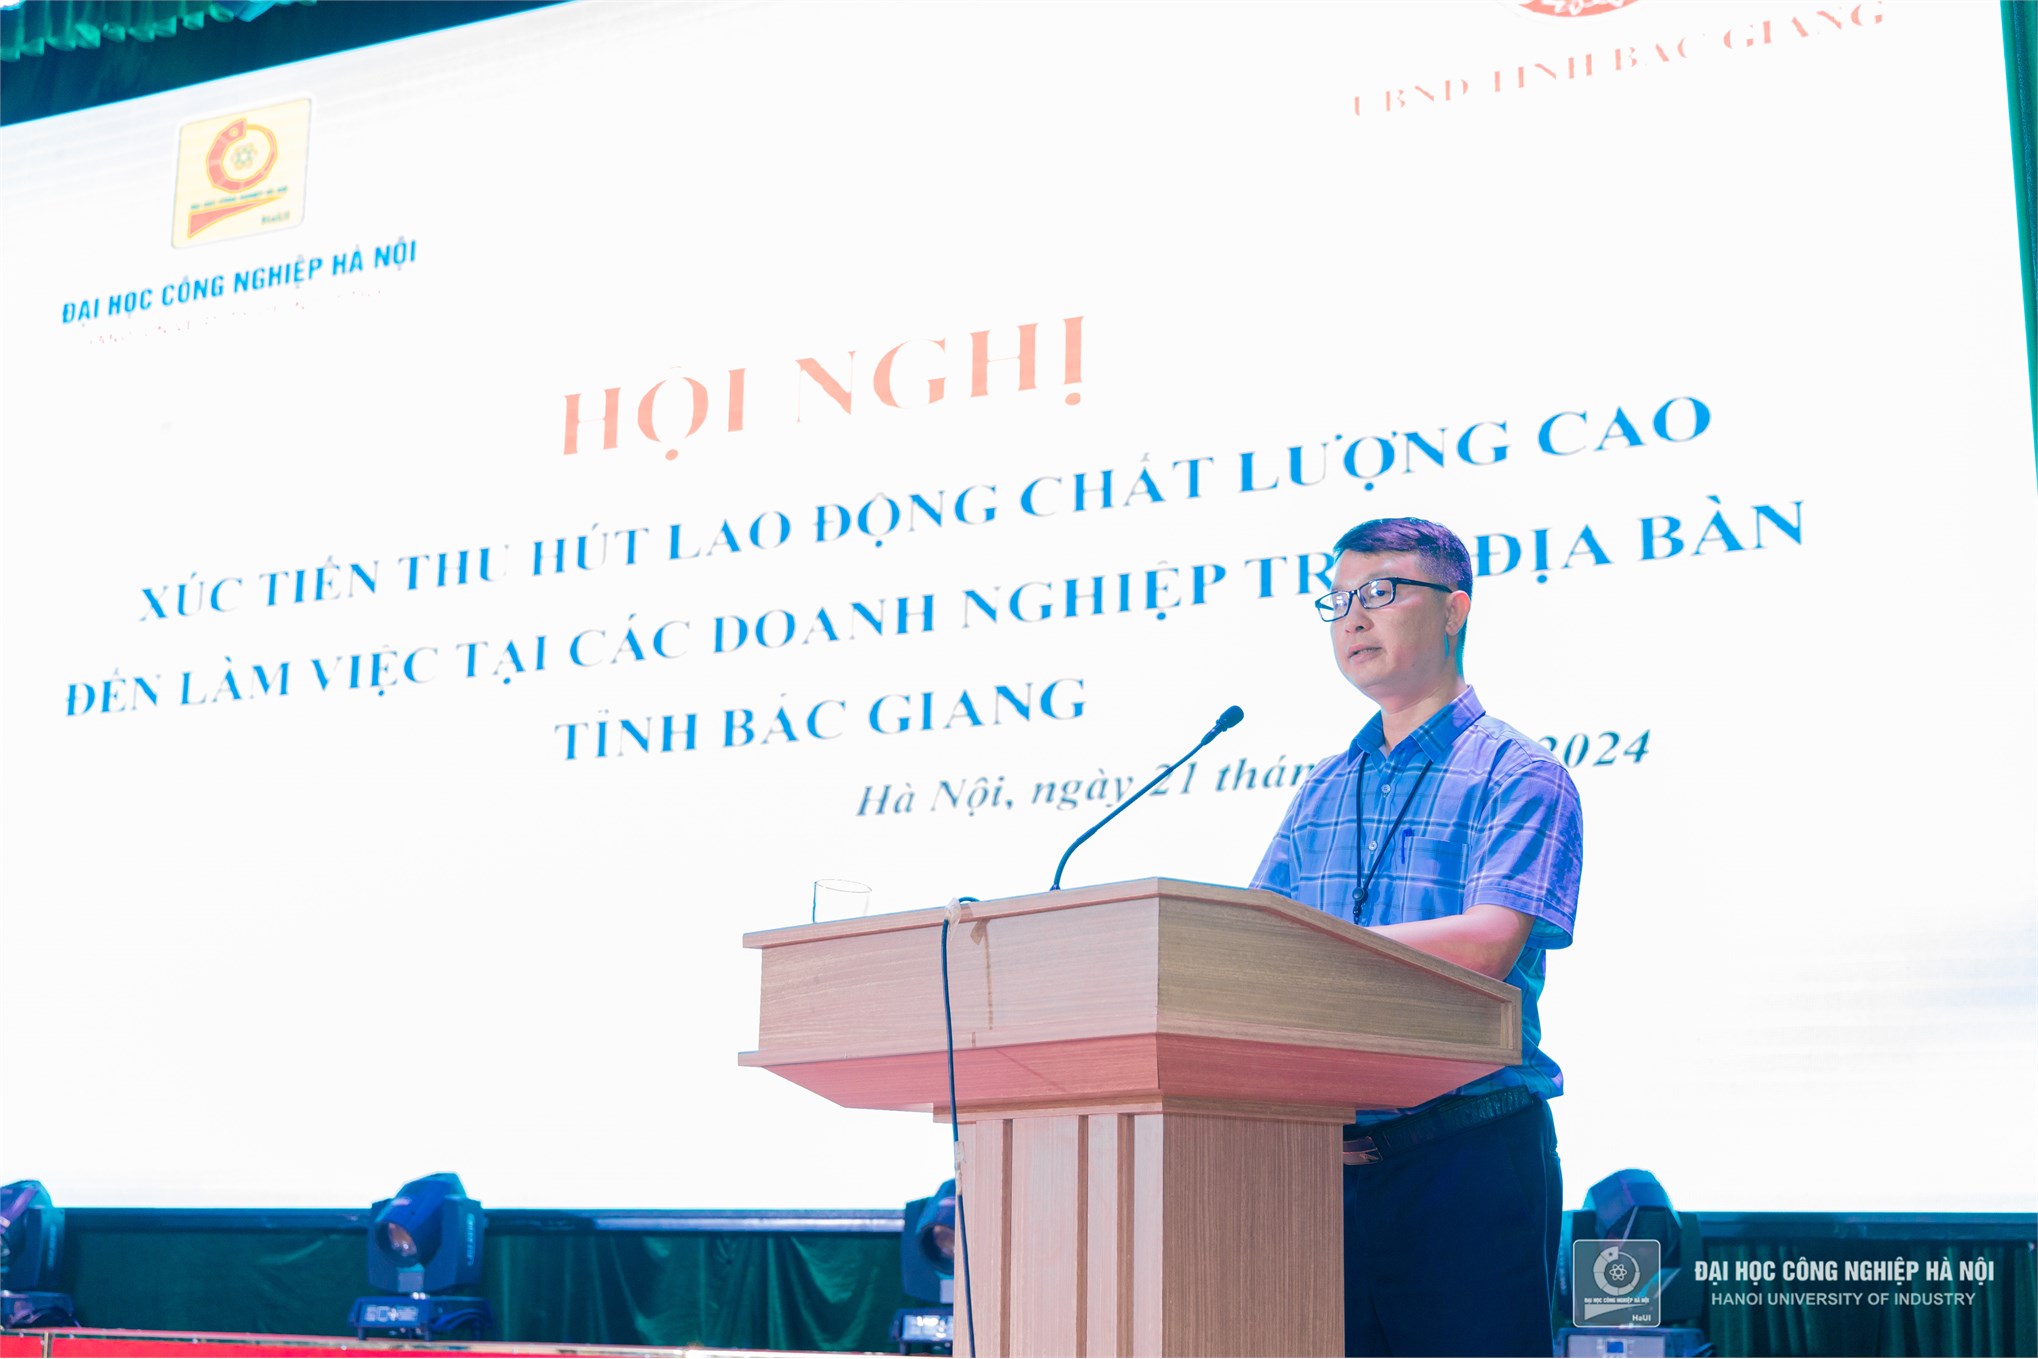 Đại học Công nghiệp Hà Nội và tỉnh Bắc Giang tăng cường hợp tác, xúc tiến thu hút nguồn lao động chất lượng cao